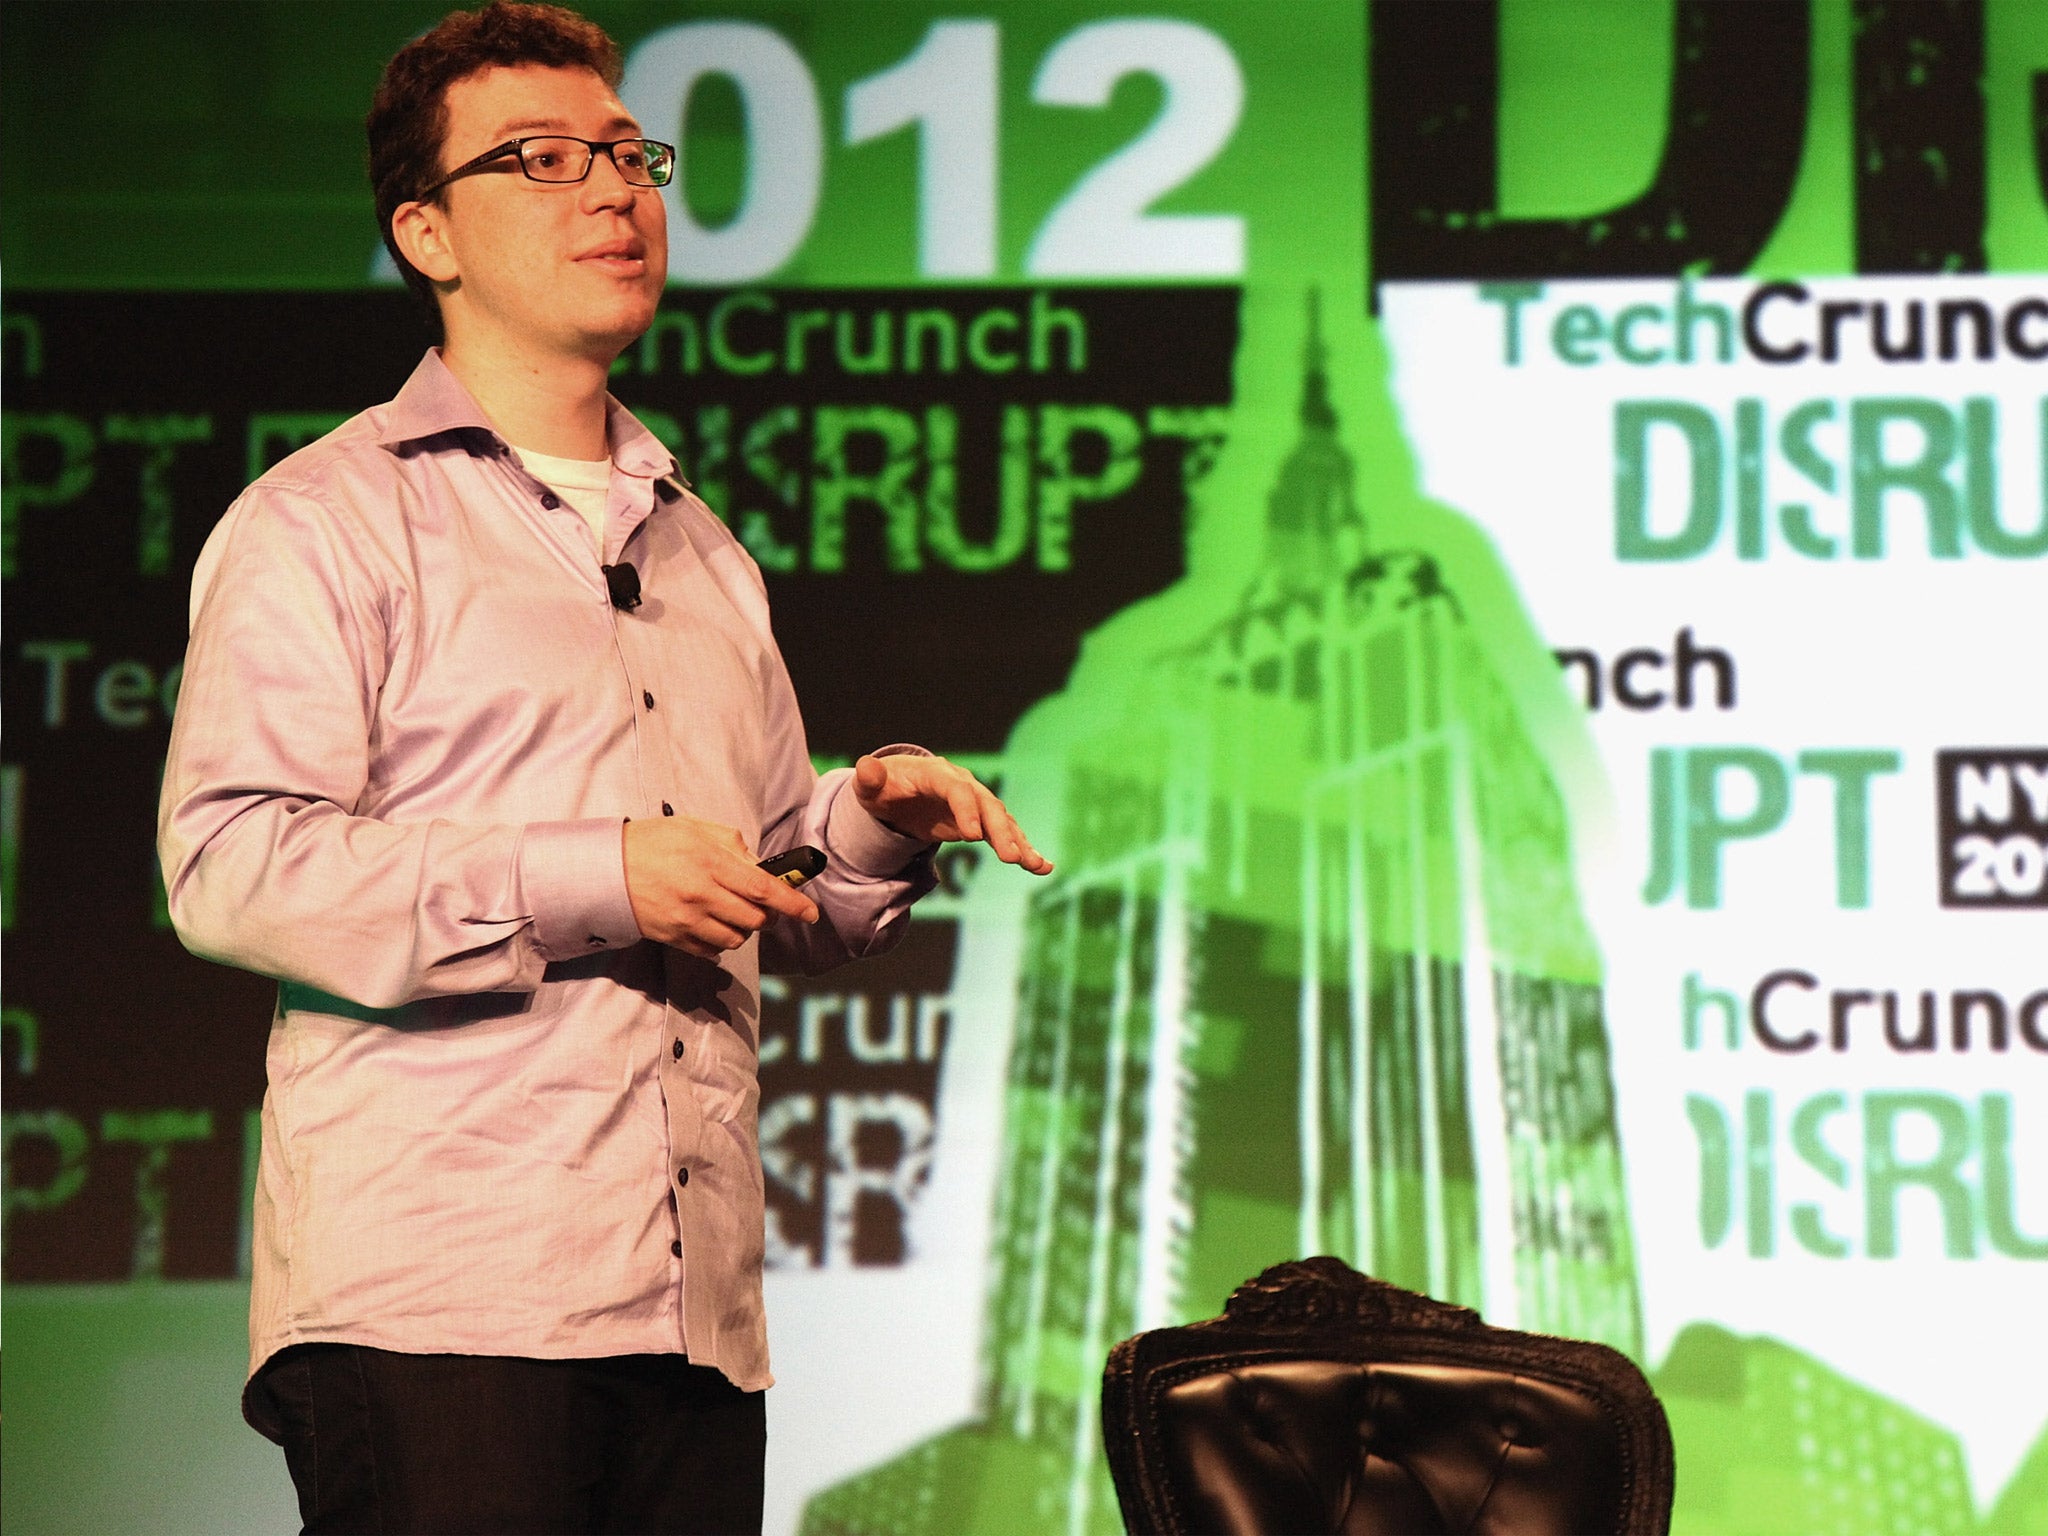 Duolingo co-founder Luis von Ahn